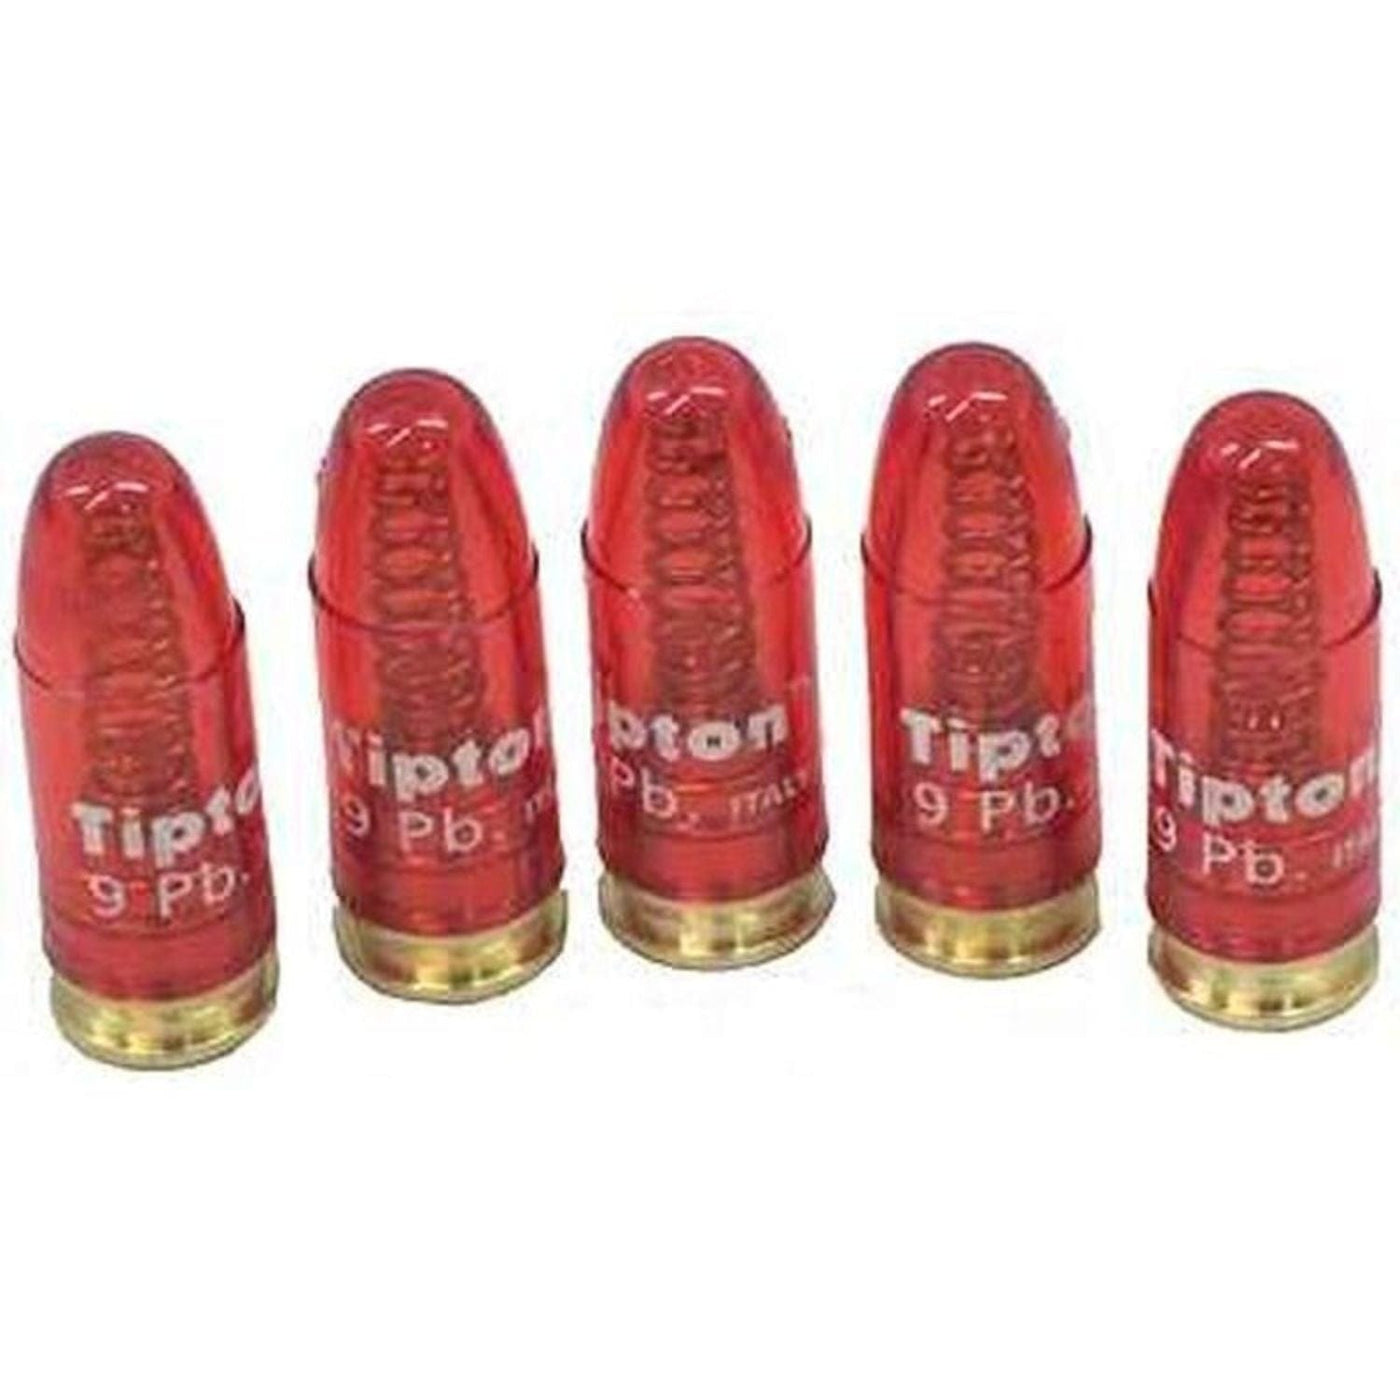 Tipton Tipton Snap Cap Pistol 9 mm Luger 5 Pack Shooting